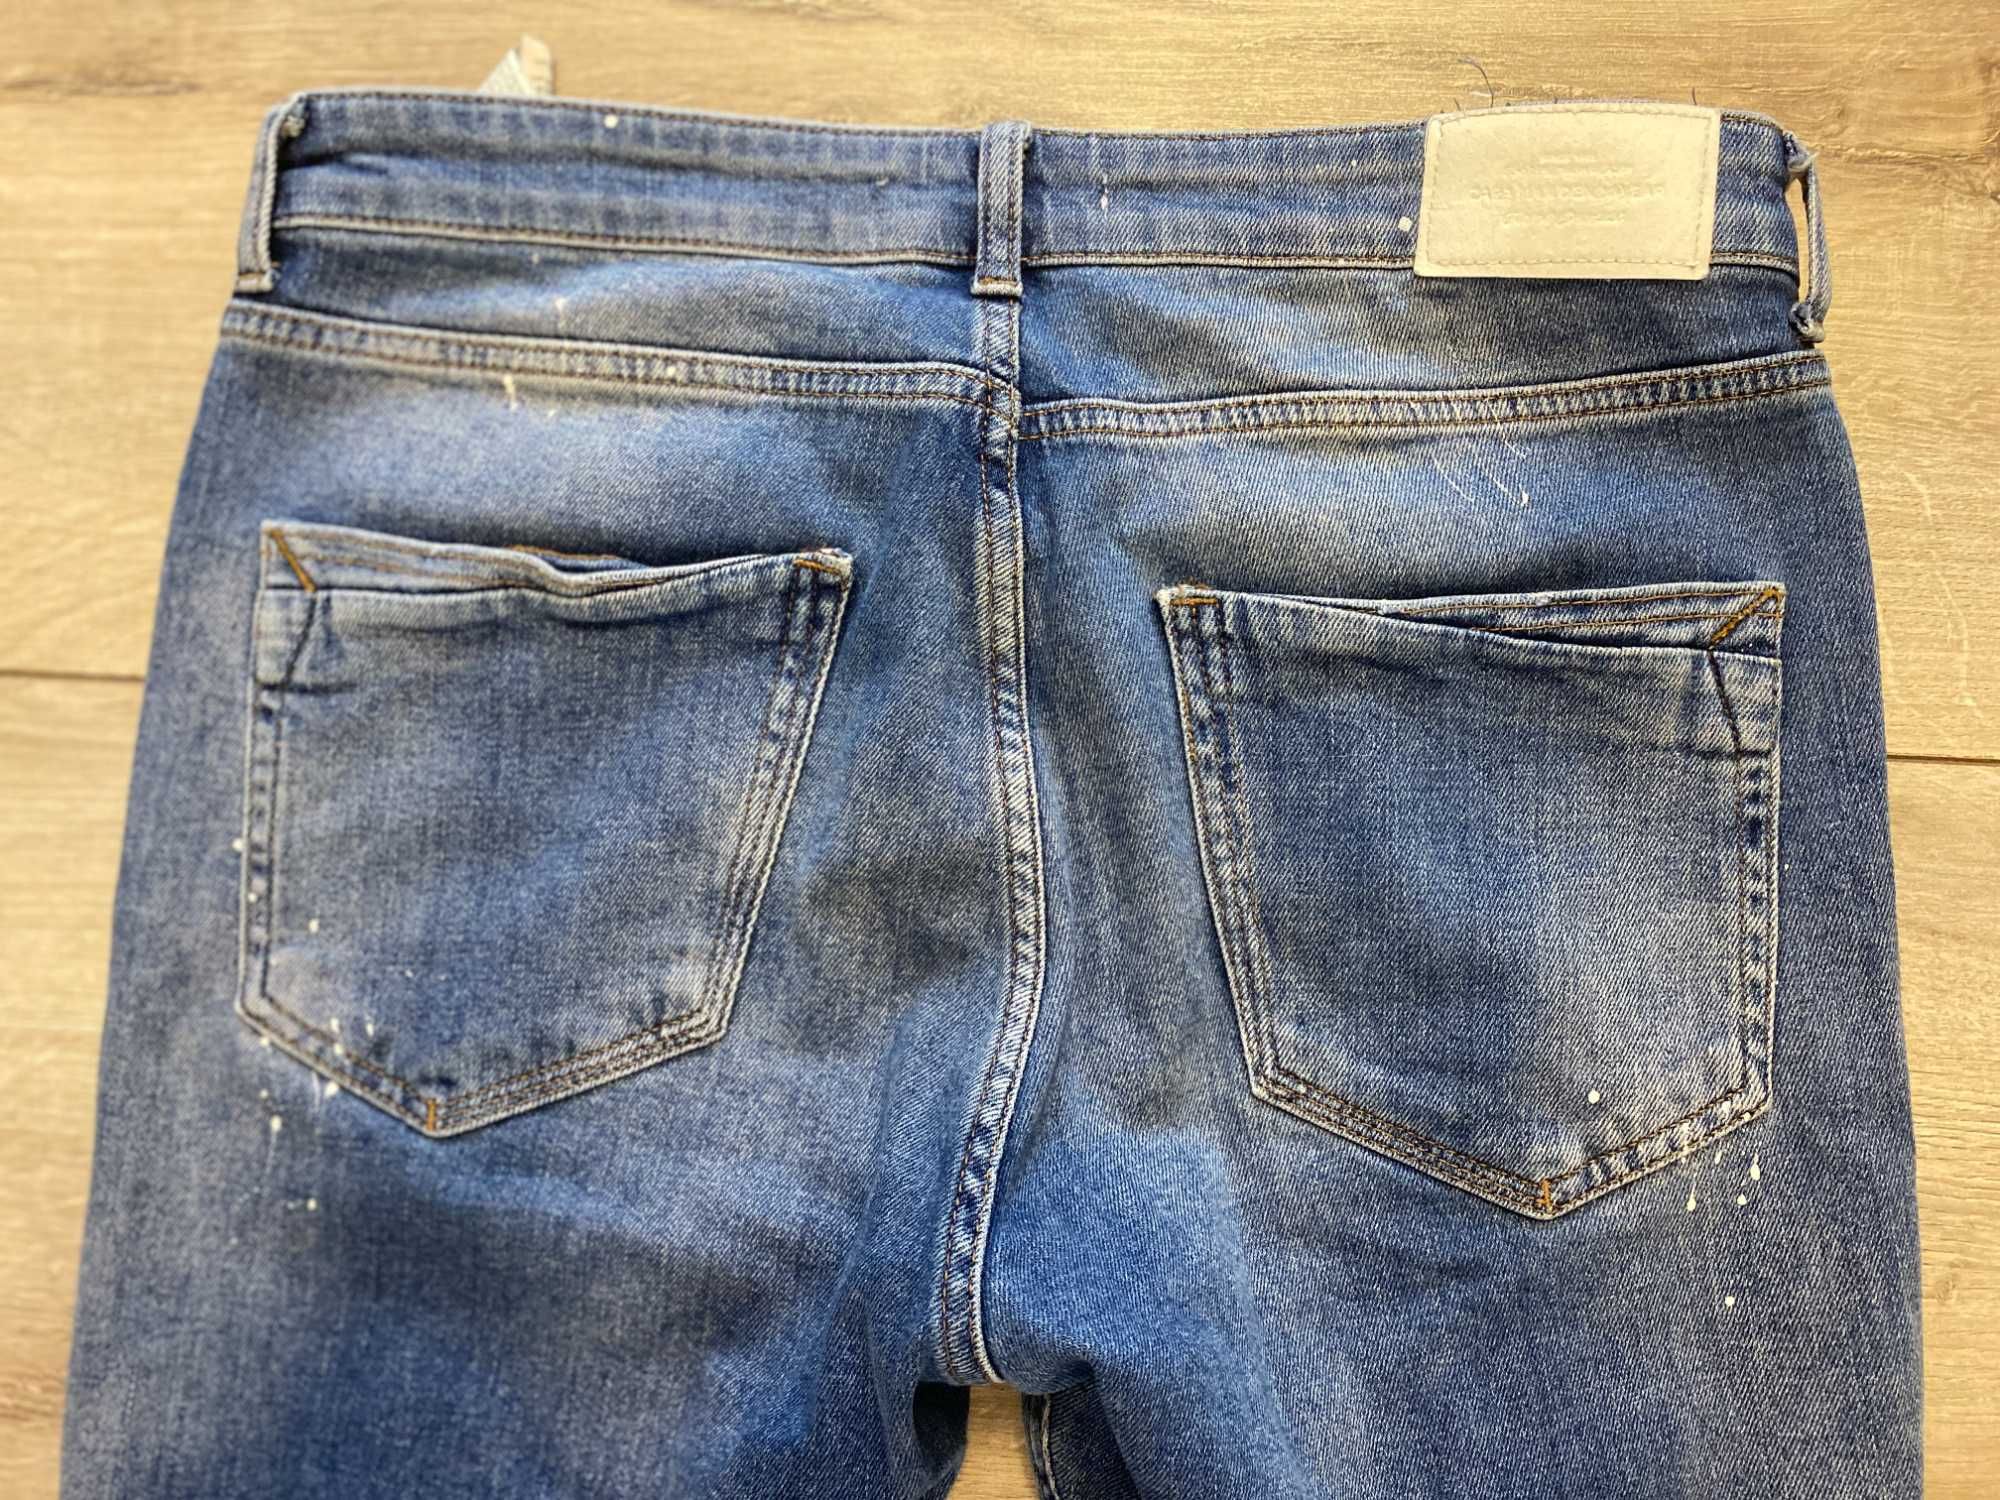 Стильные джинсы Zara